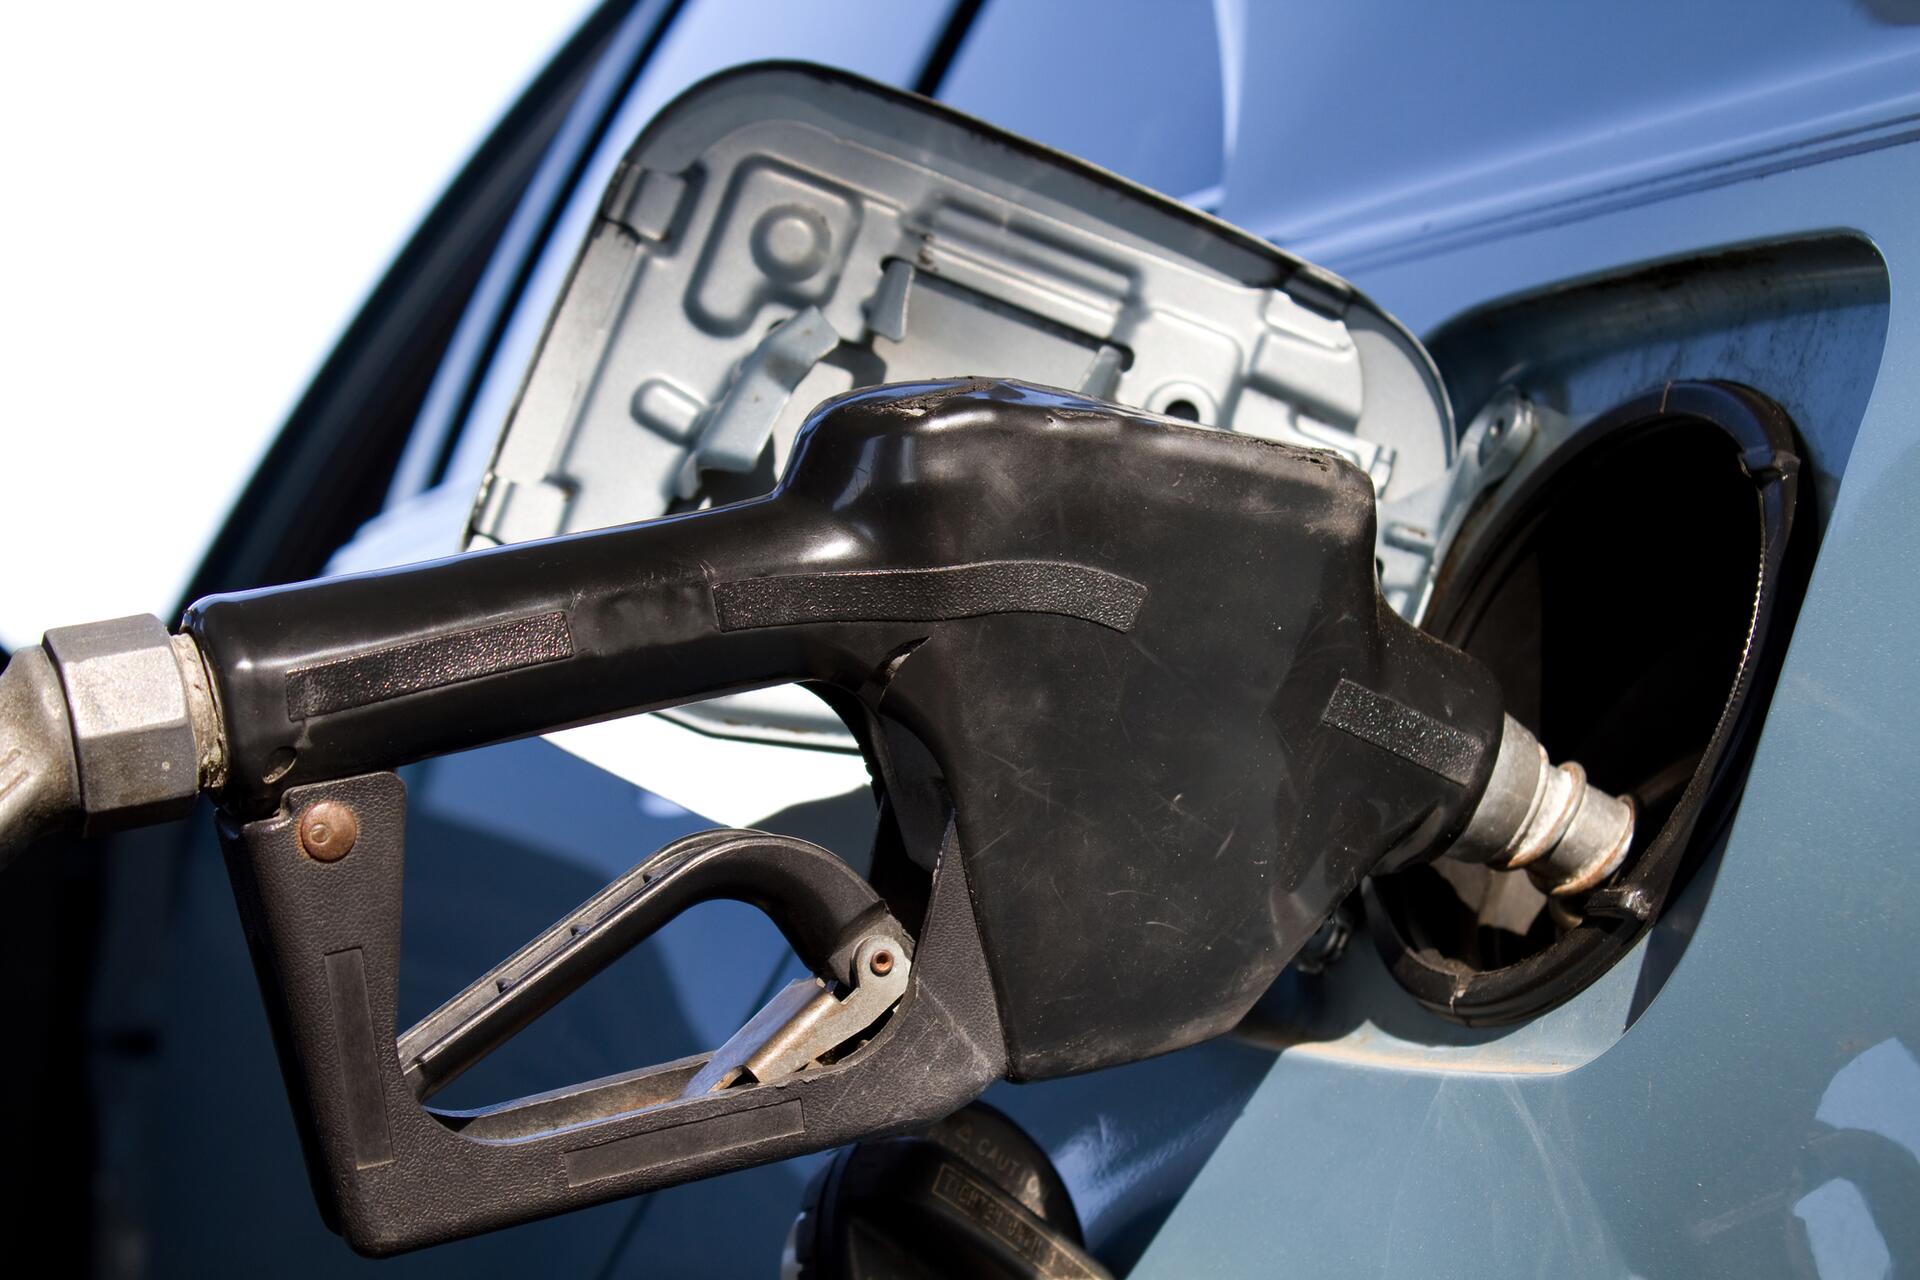 Čerpací stanice ONO - jaká je cena nafty a benzínu?